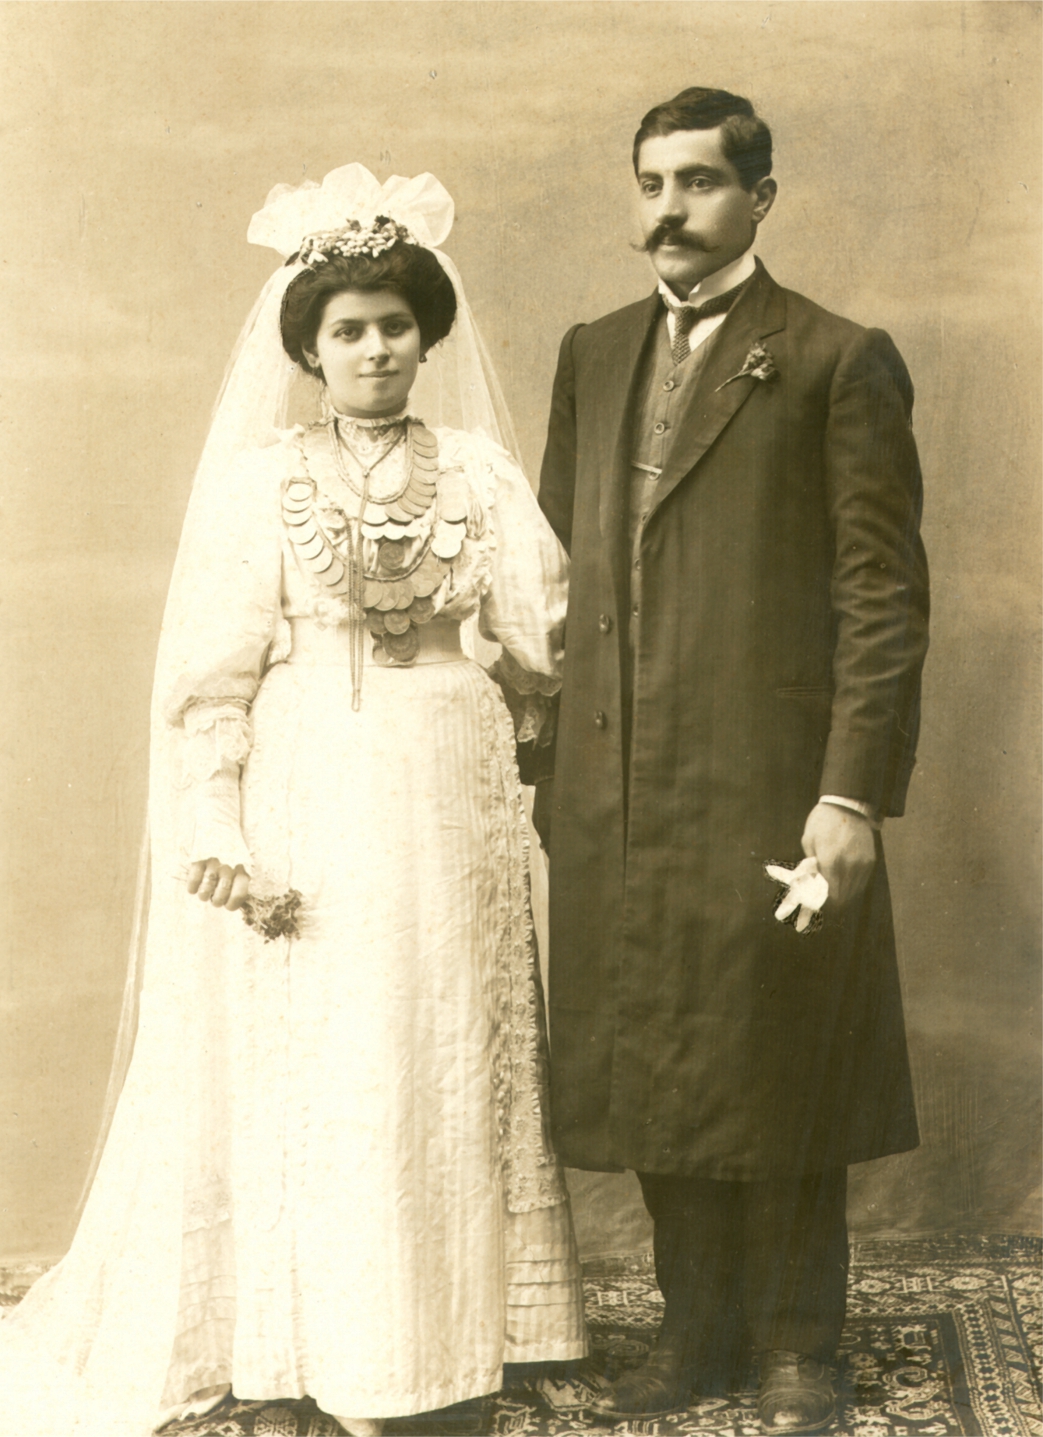 Տէր եւ Տիկին Տիգրան եւ Մարի Դանիէլեաններ,Կ.Պոլիս, 1917 թ.։